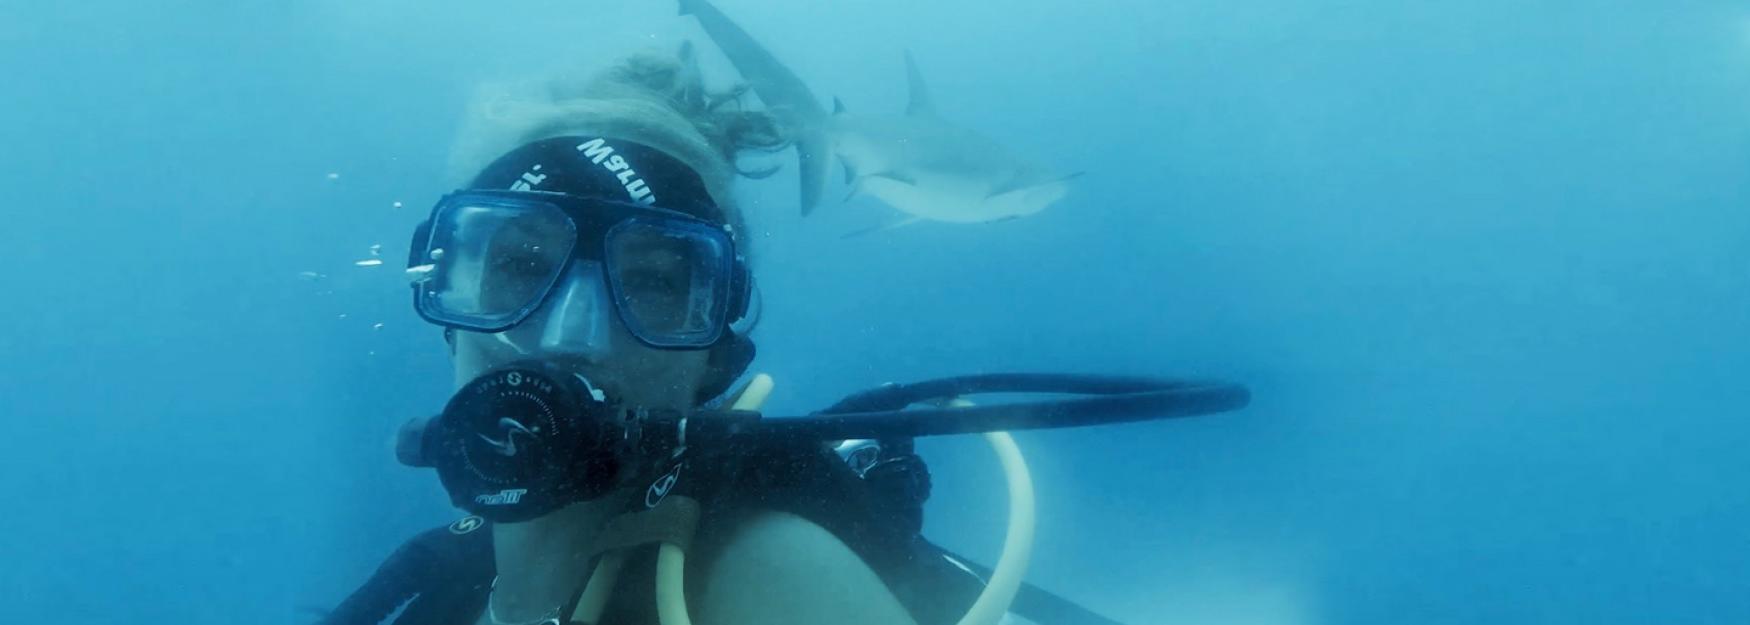 海洋科学专业的学生Katie Dimm穿着全套潜水装备在水下拍照